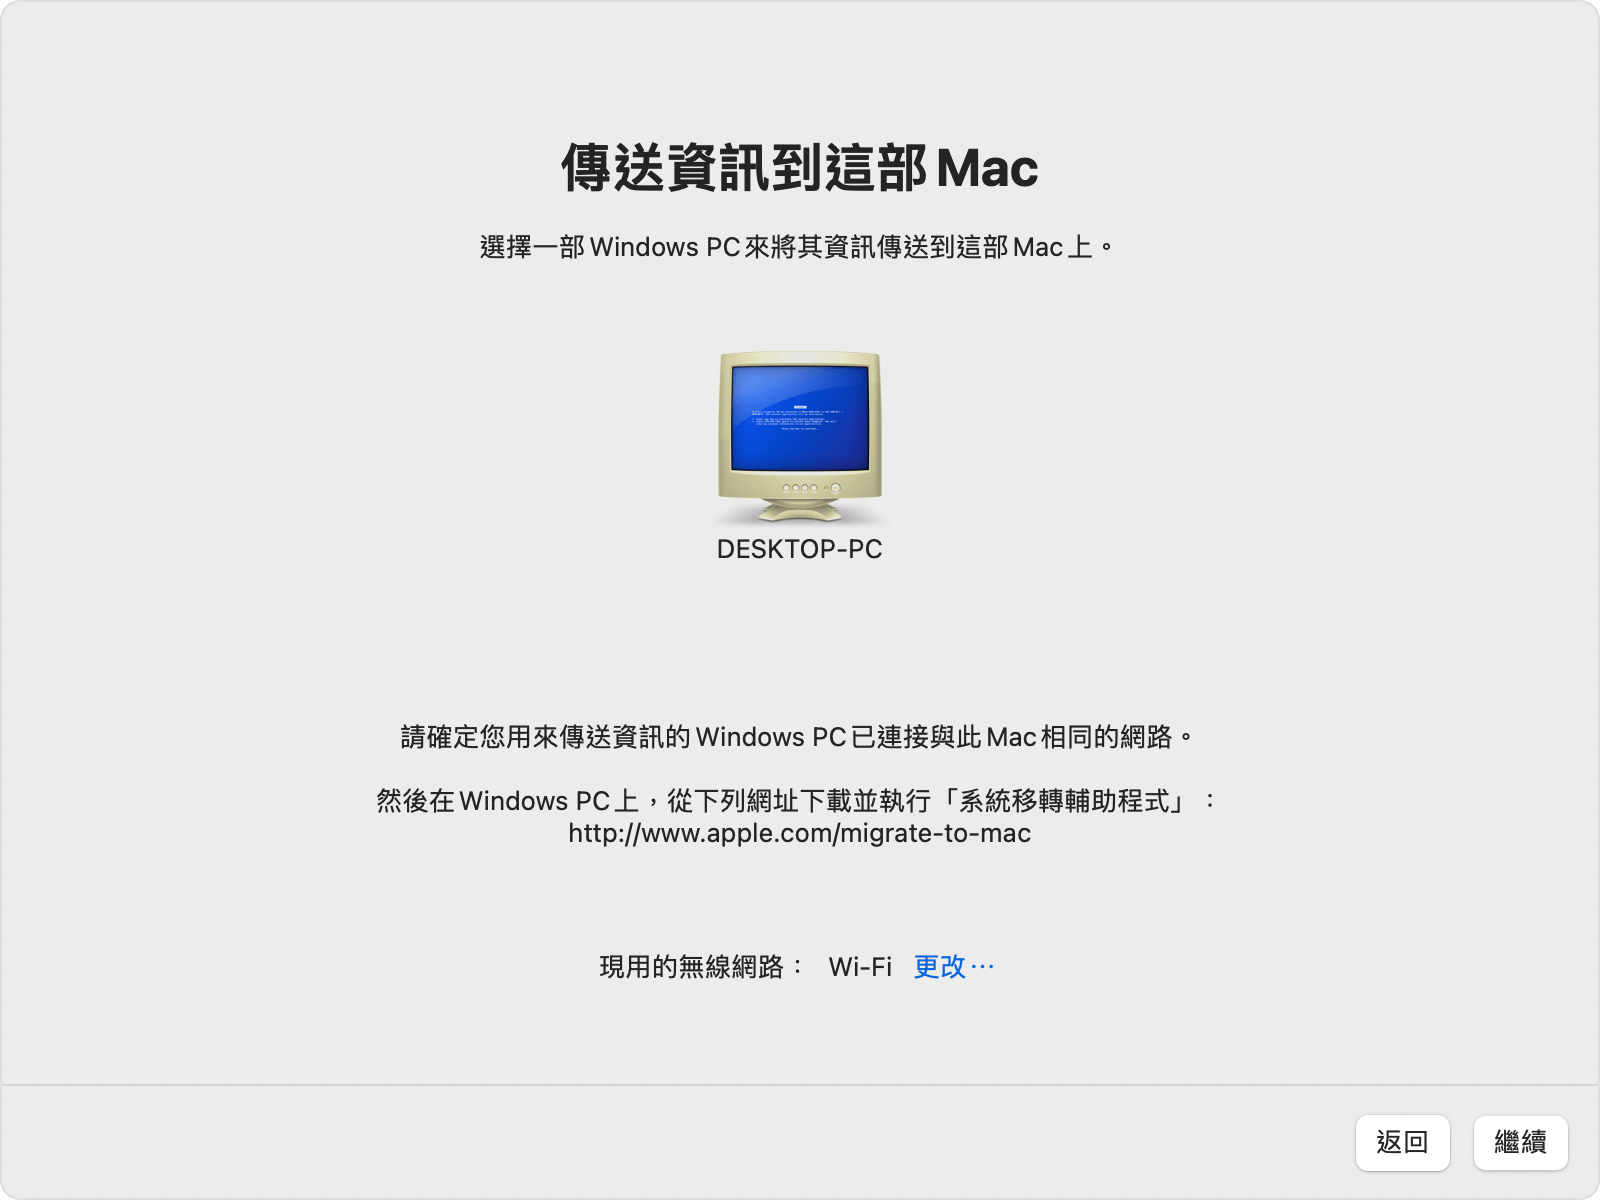 Mac 上的「系統移轉輔助程式」：選取 Windows PC